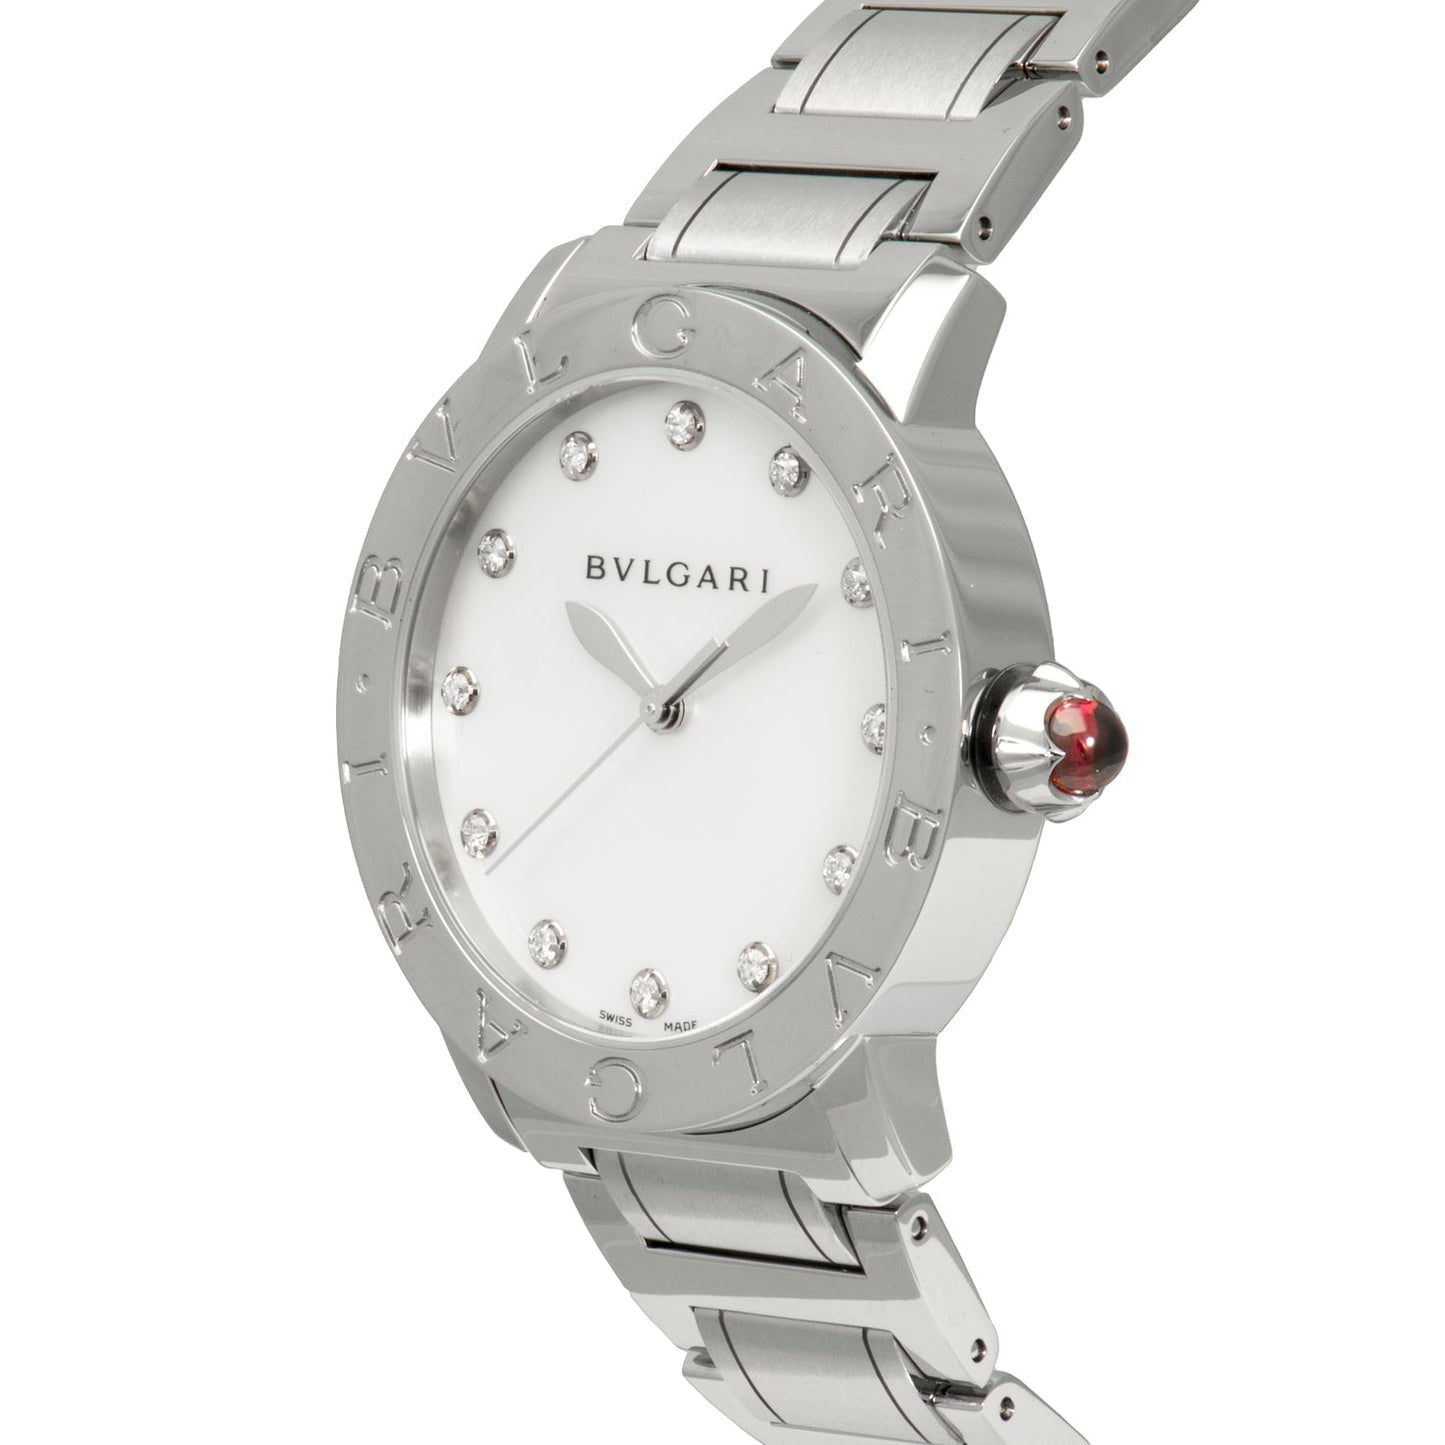 Bvlgari "BVLGARI" Automatic 37mm Ladies Watch 101975